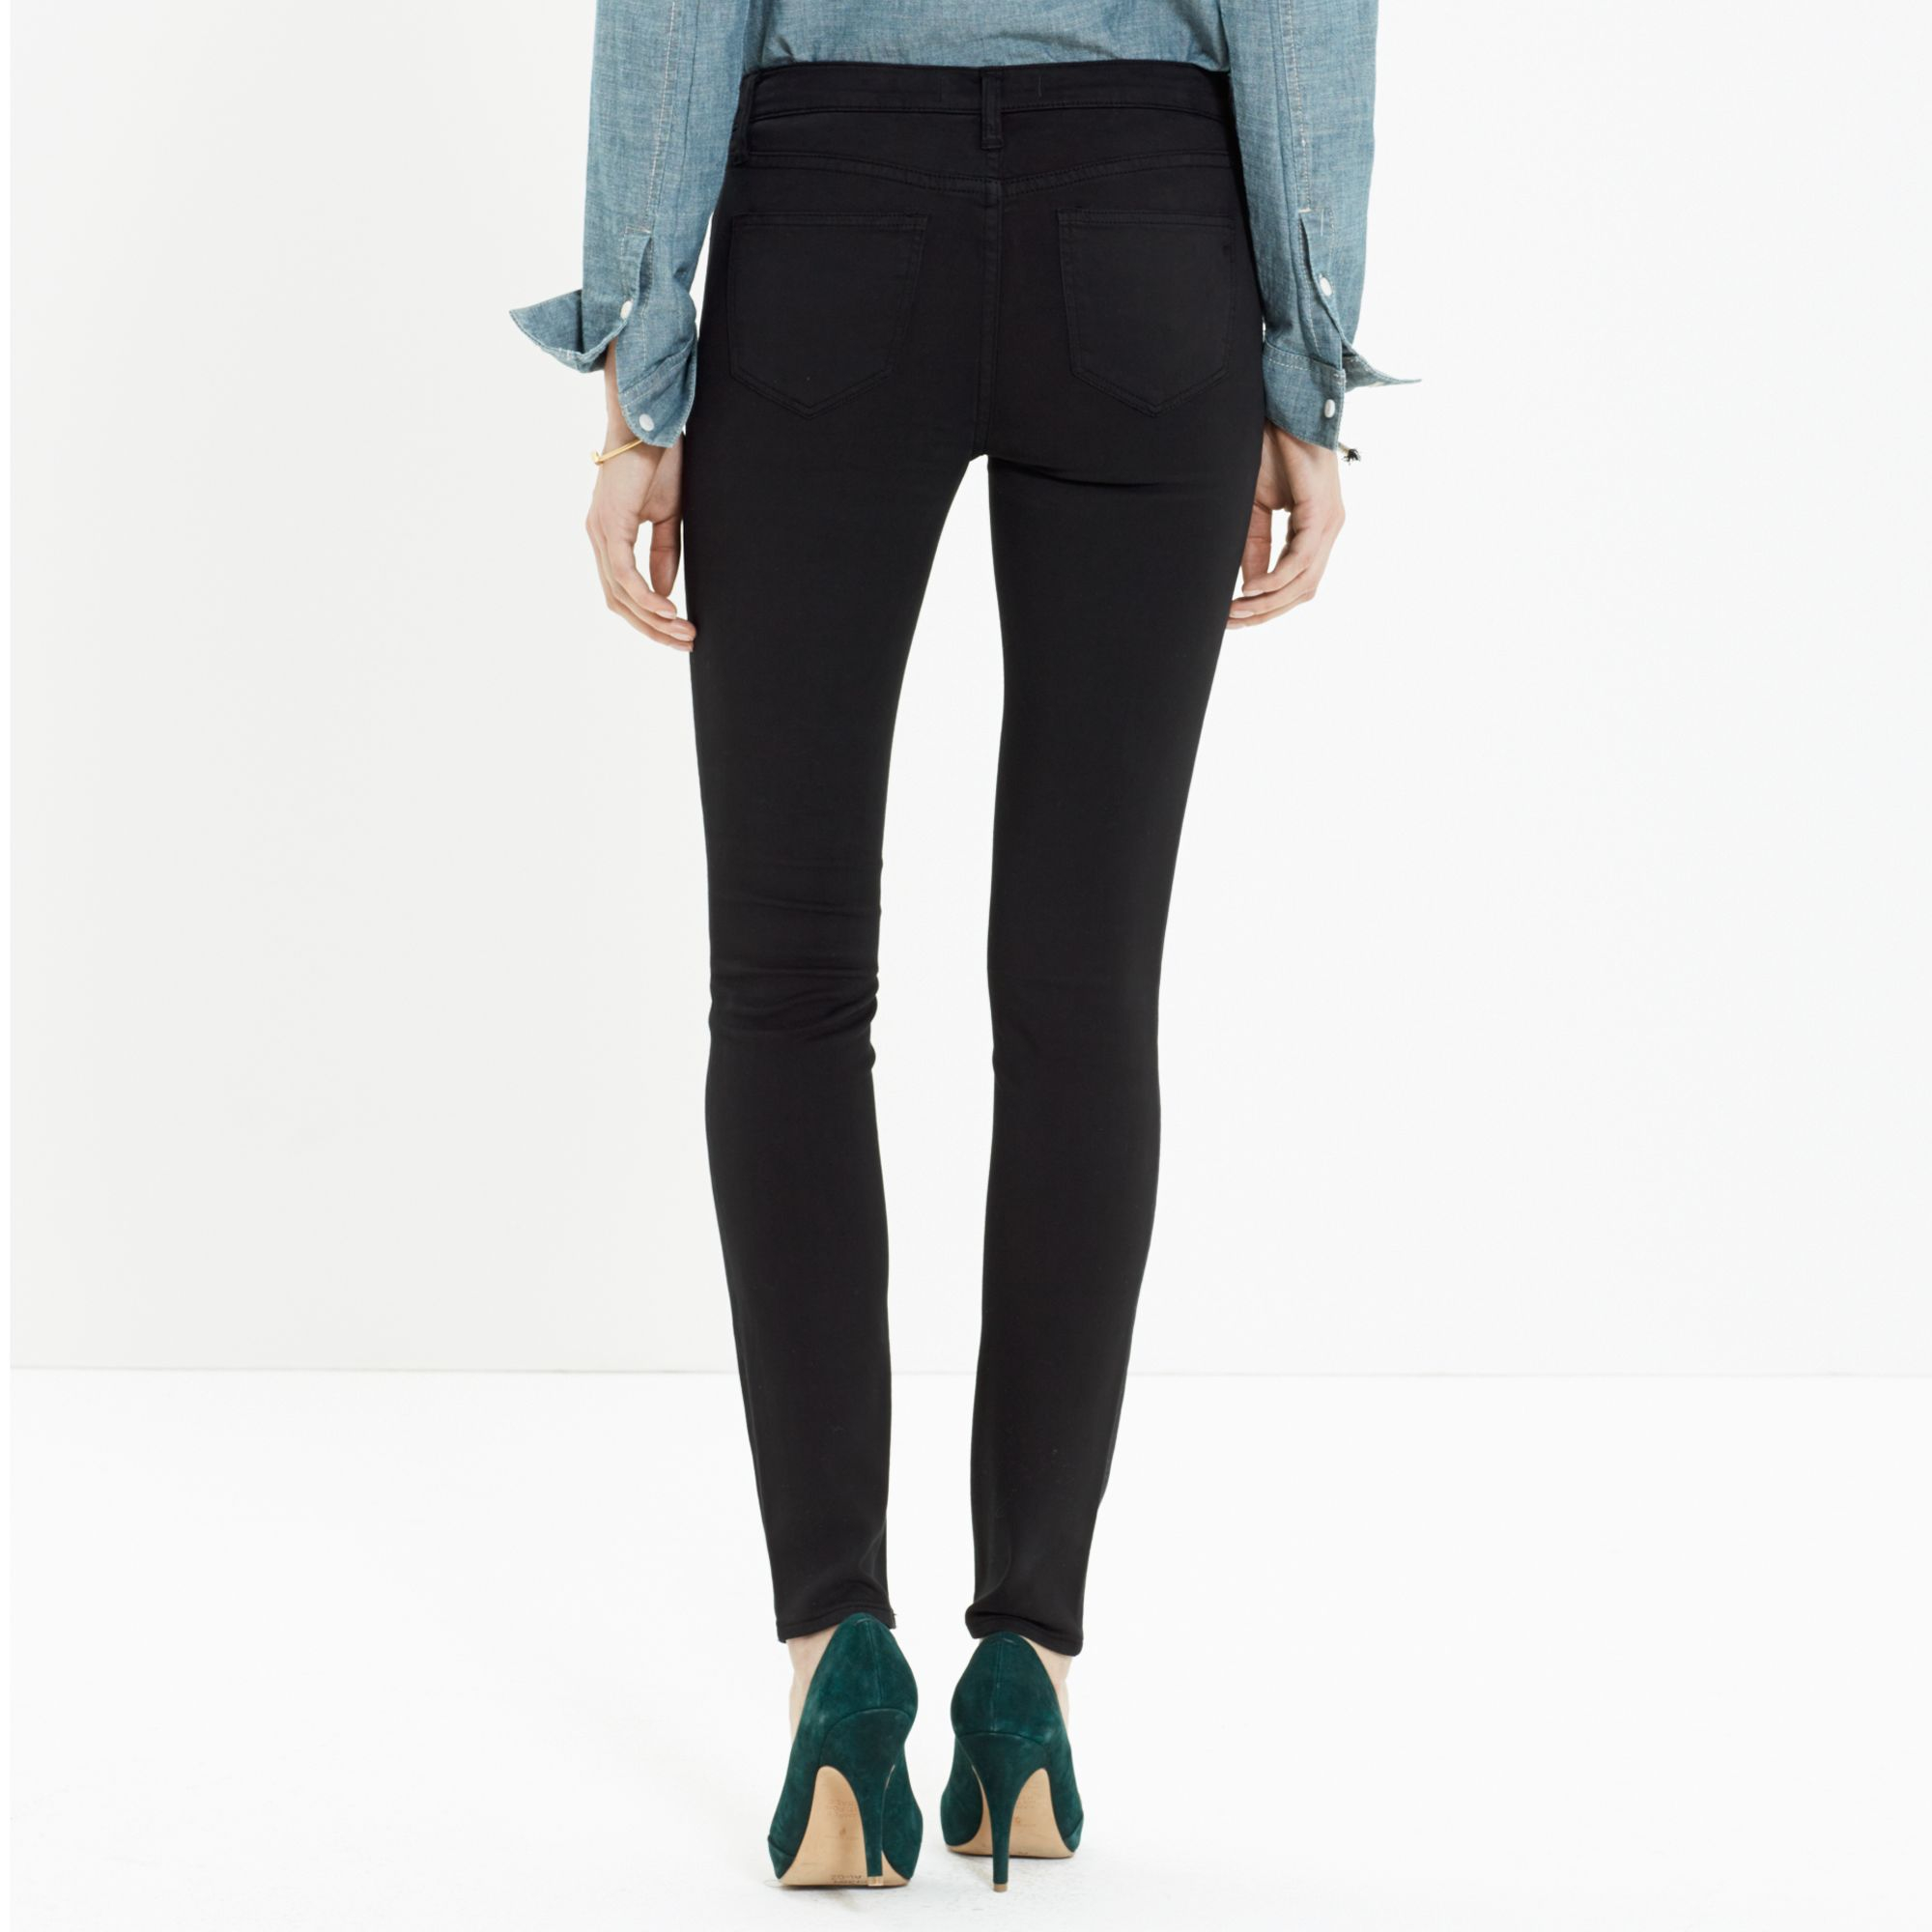 Lyst - Madewell Skinny Skinny Sateen Jeans in Black